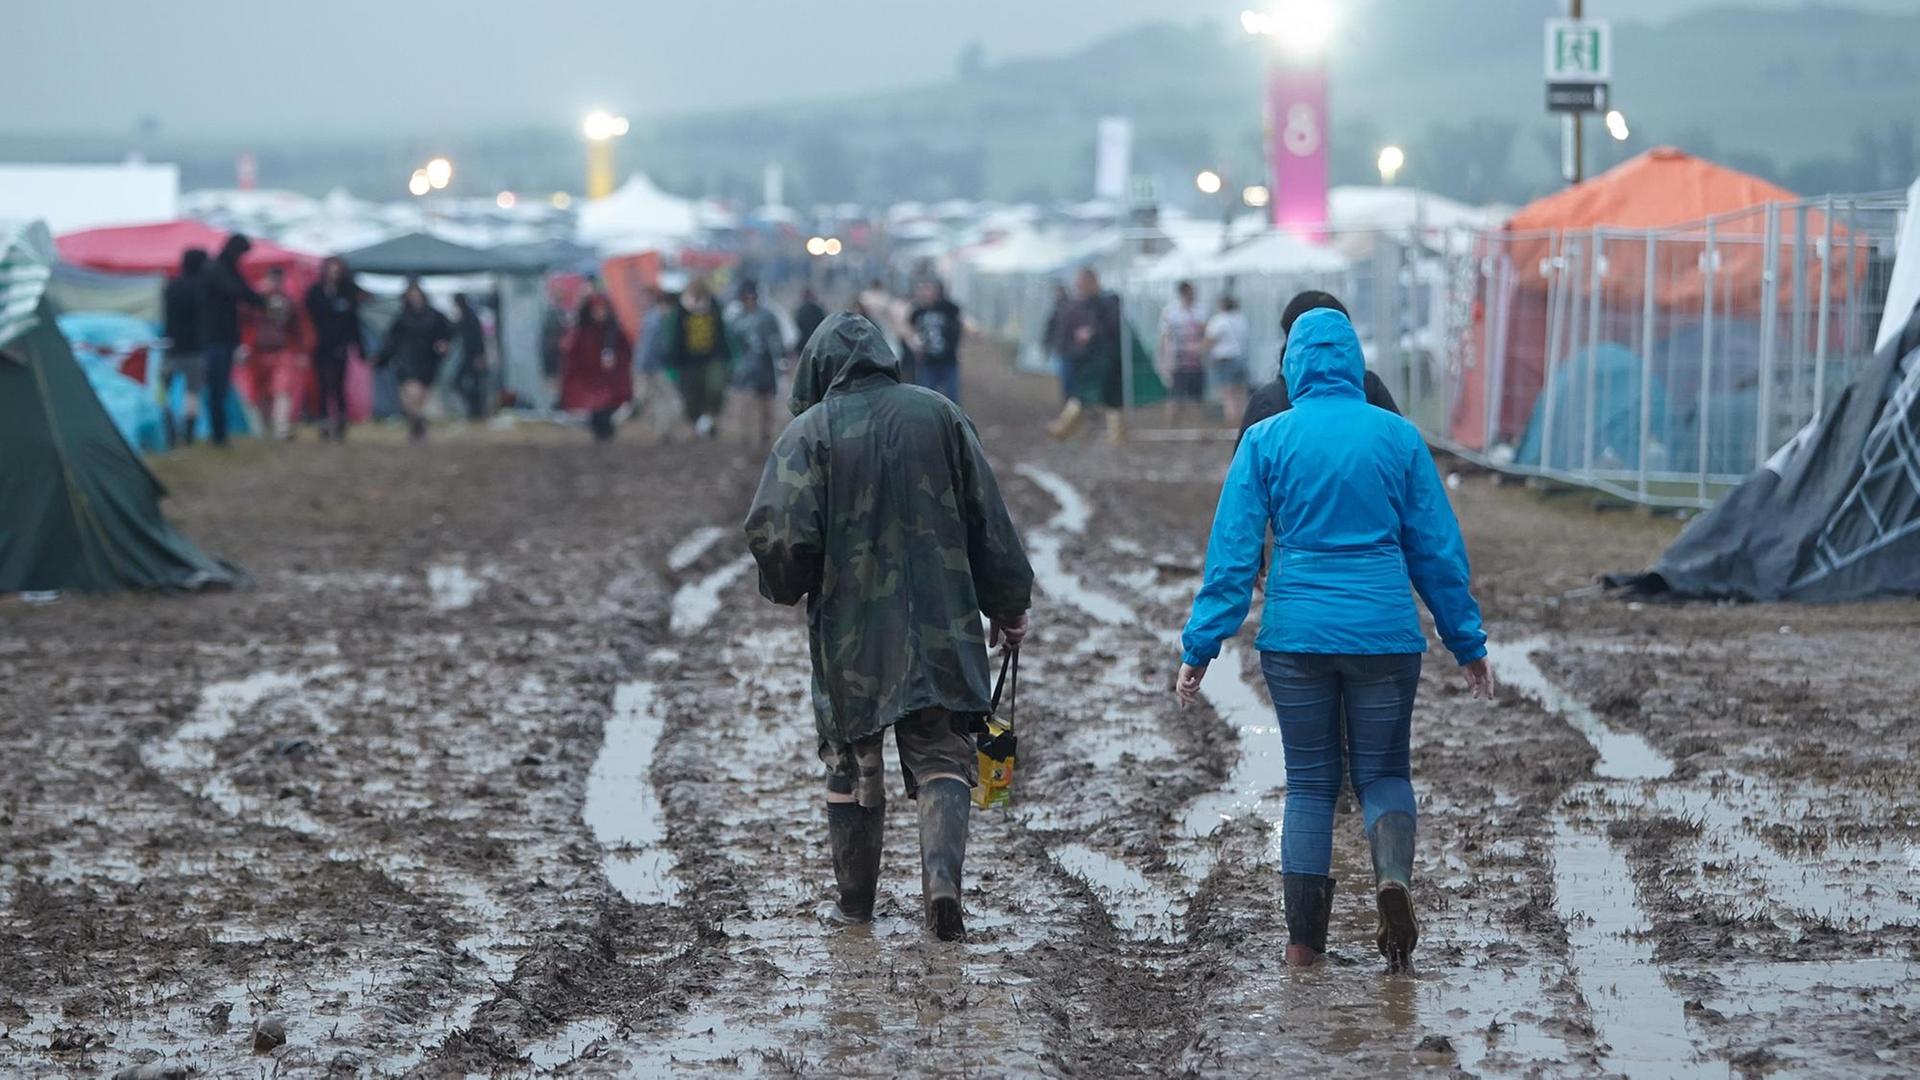 Festivalbesucher gehen am 03.06.2016 beim Festival "Rock am Ring" nach einem Gewitterregen über das aufgeweichte Gelände.